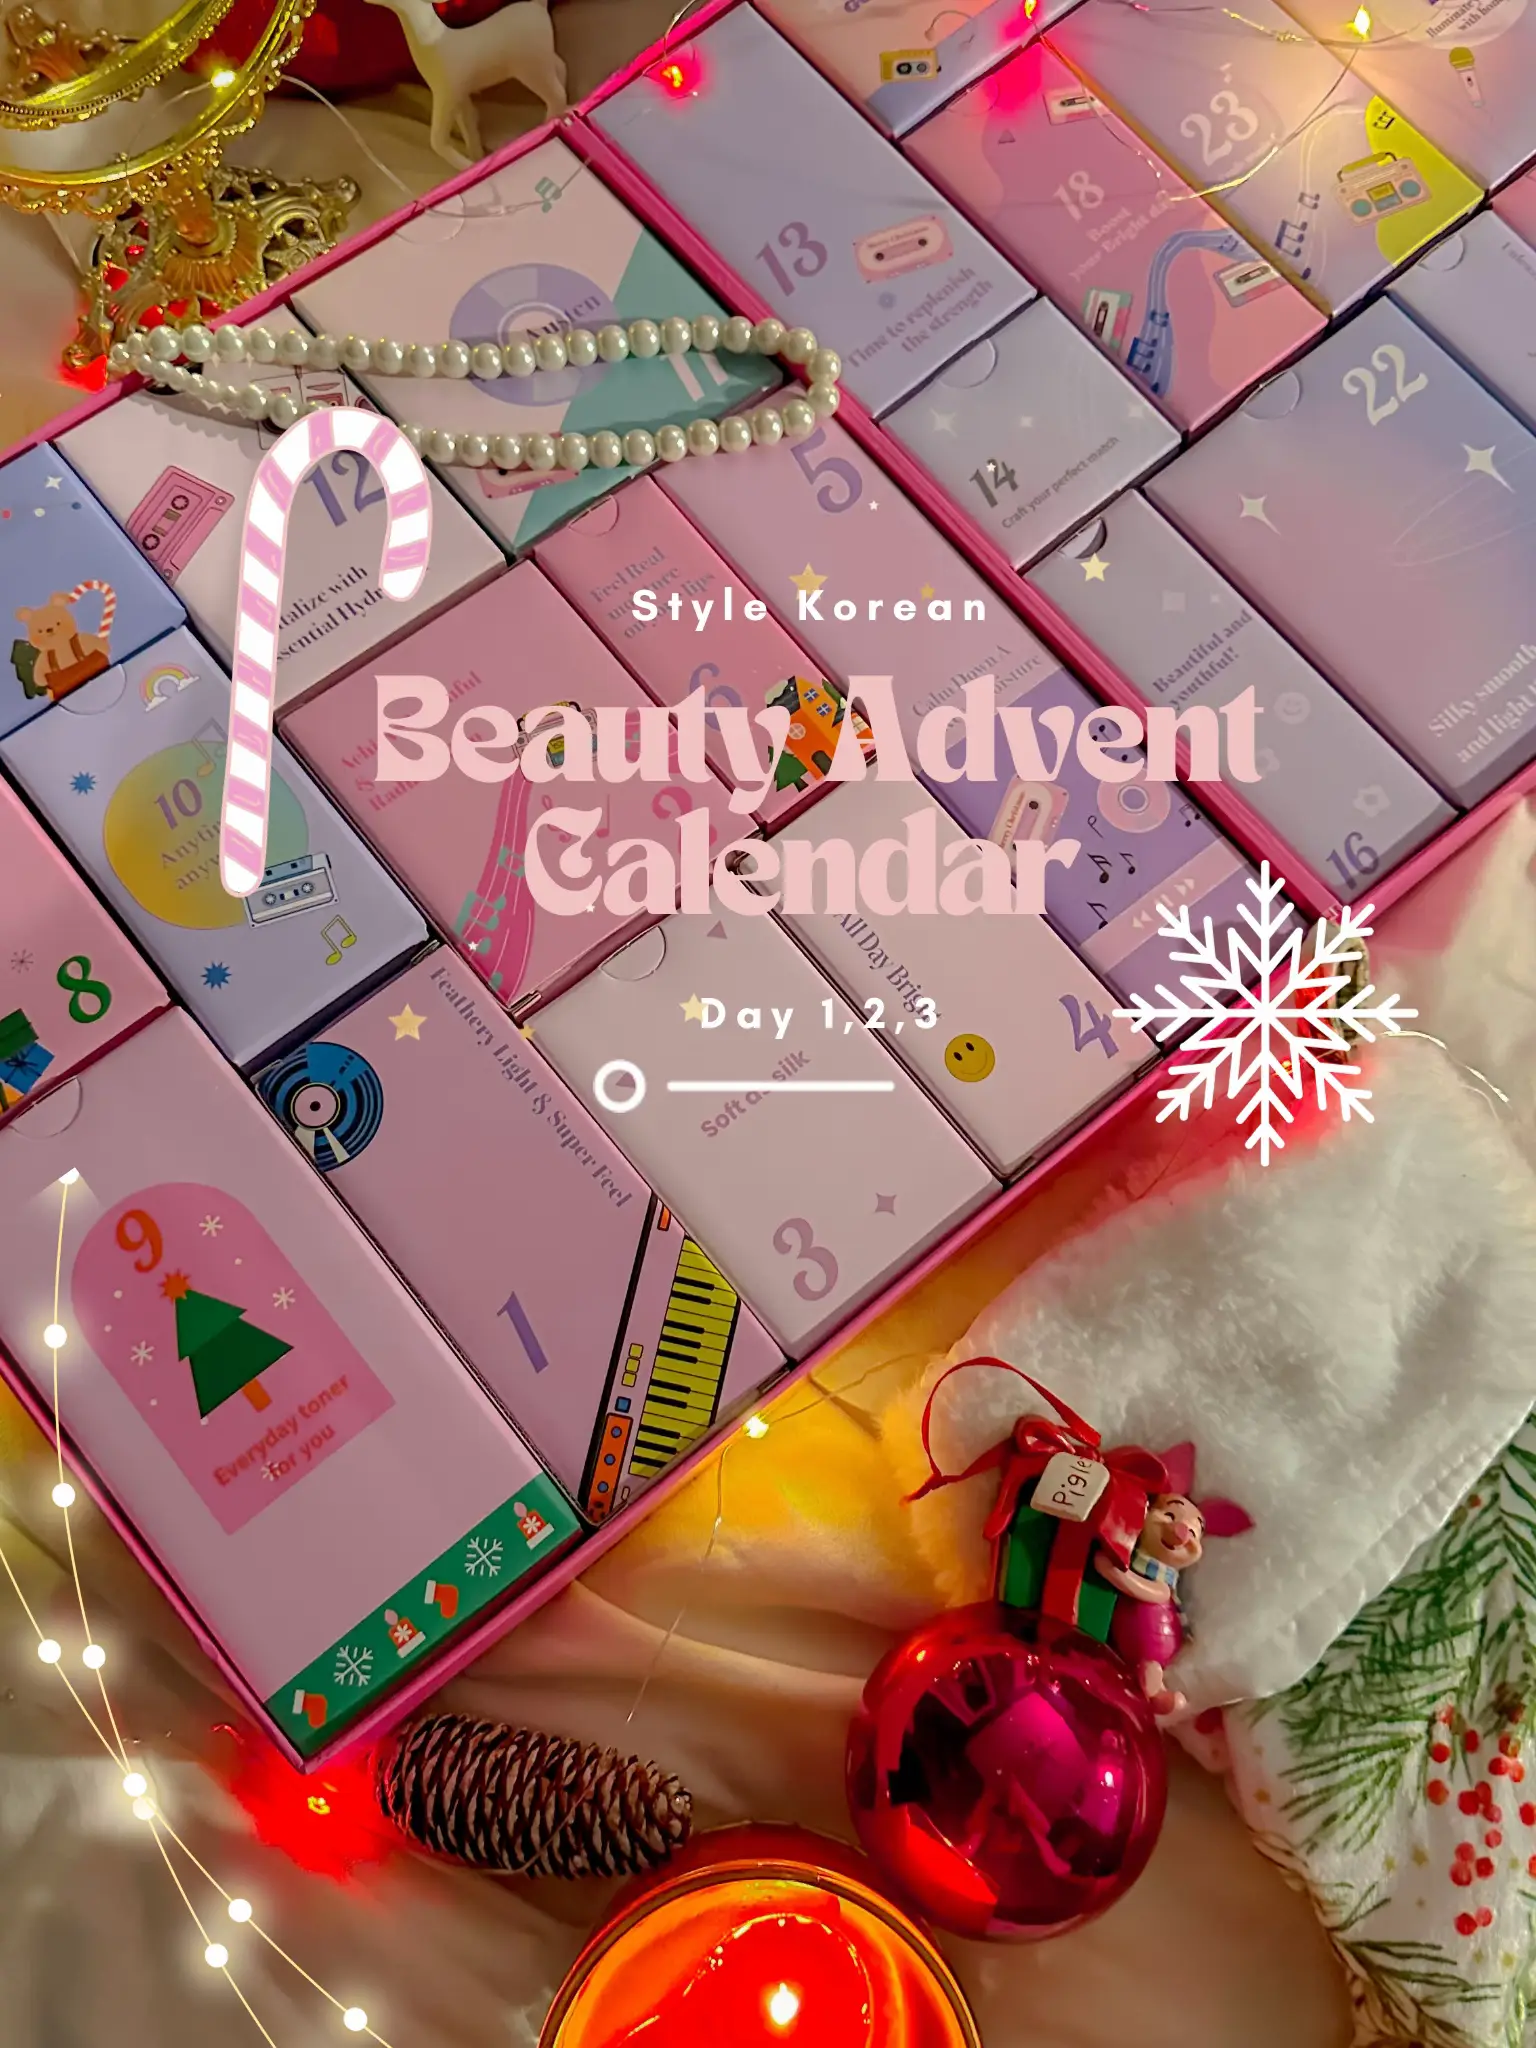 W7 - Calendario de Adviento 12 Days Beauty Bite